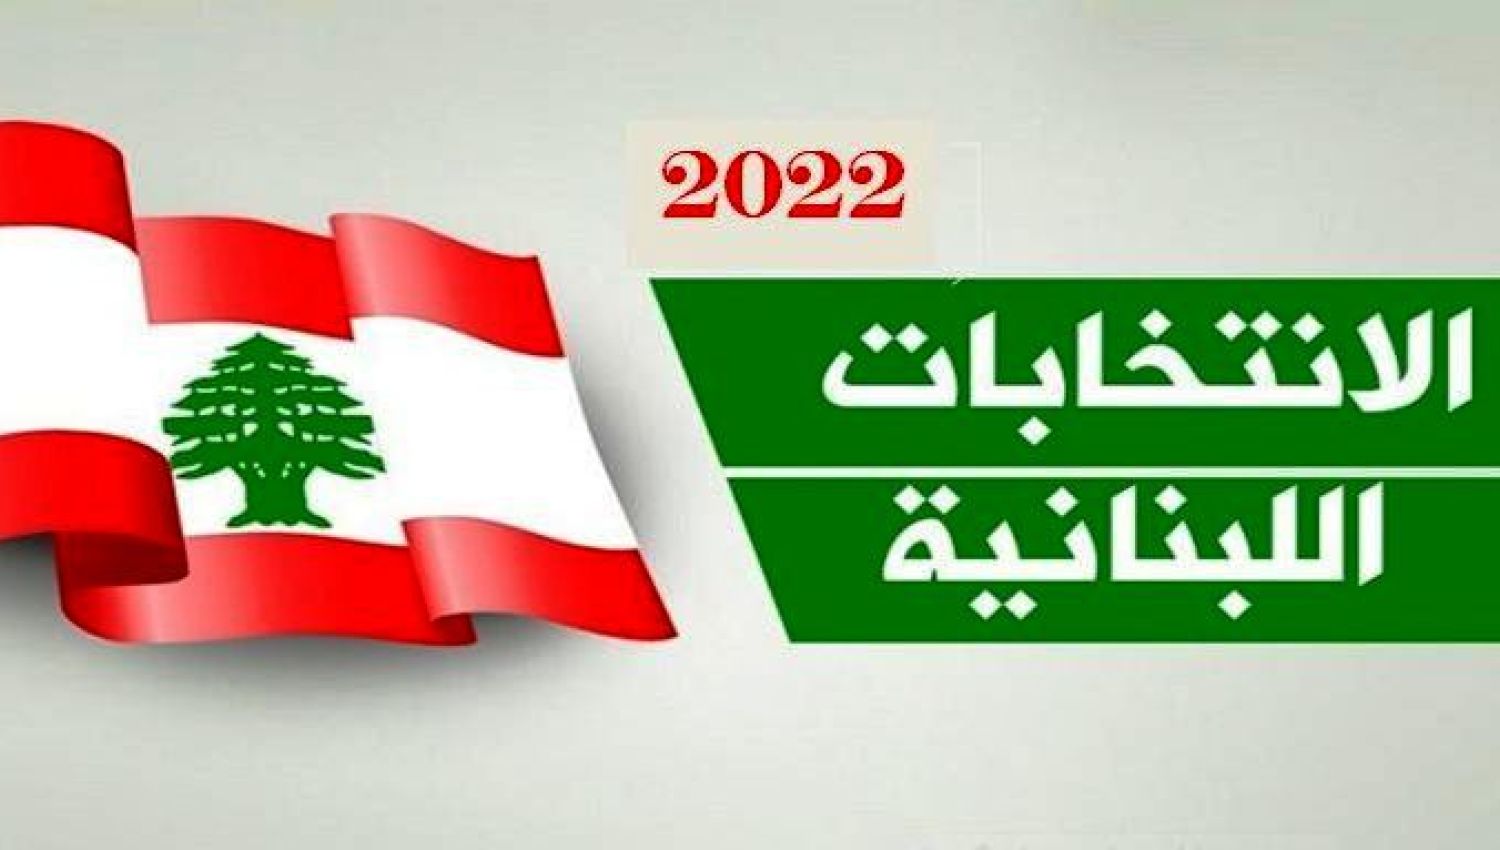 اهمية المشاركة في انتخابات 2022 - شربل نوح